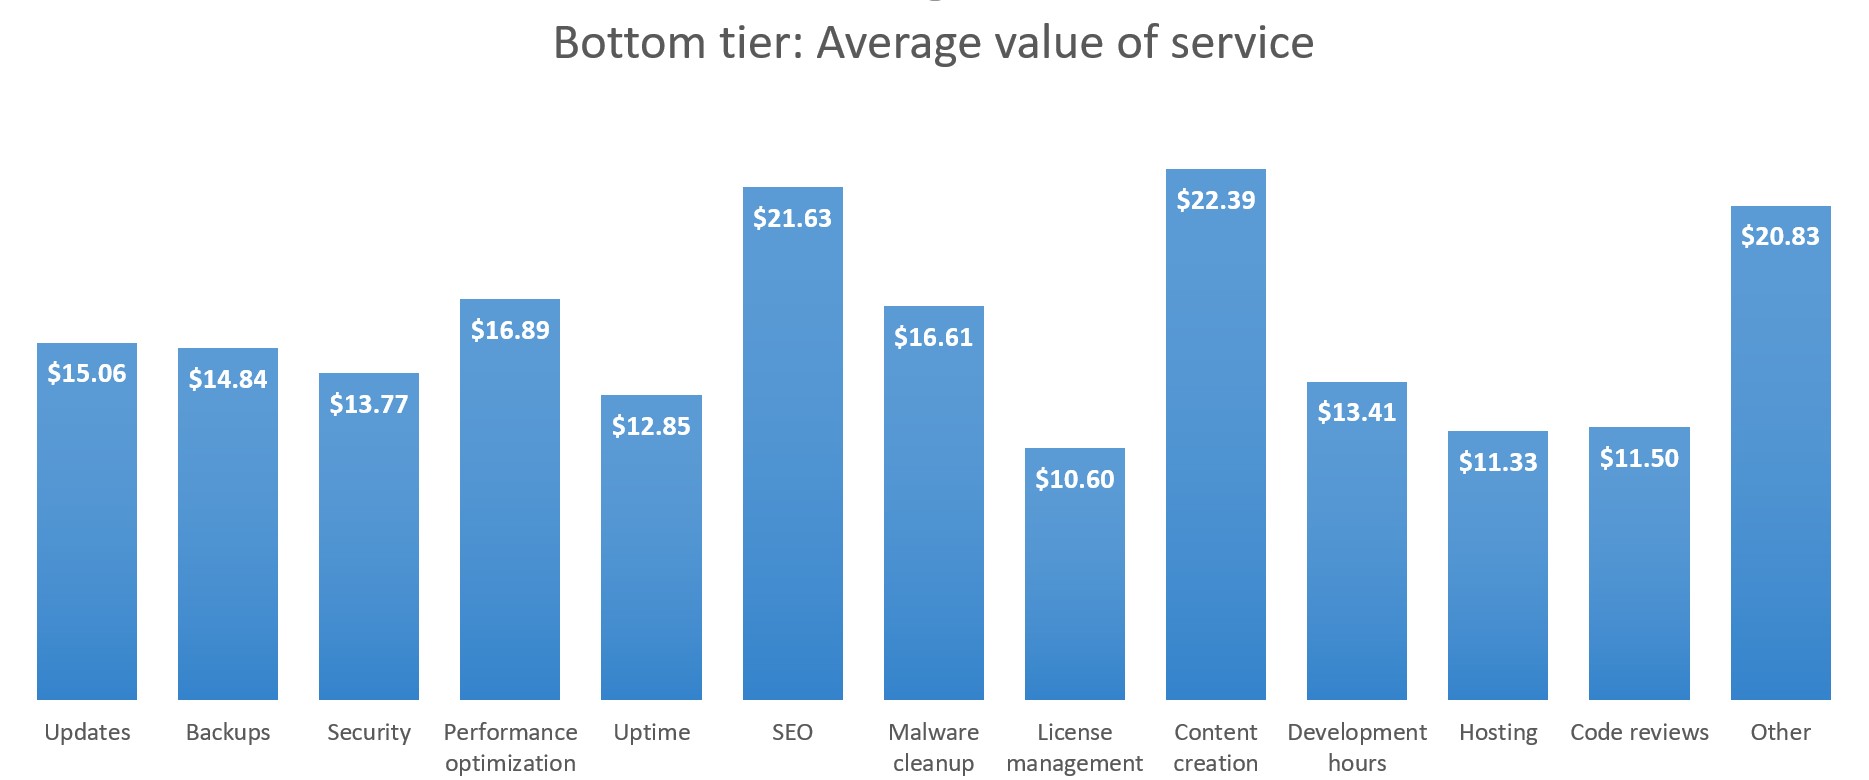 Bottom tier: Average value per service